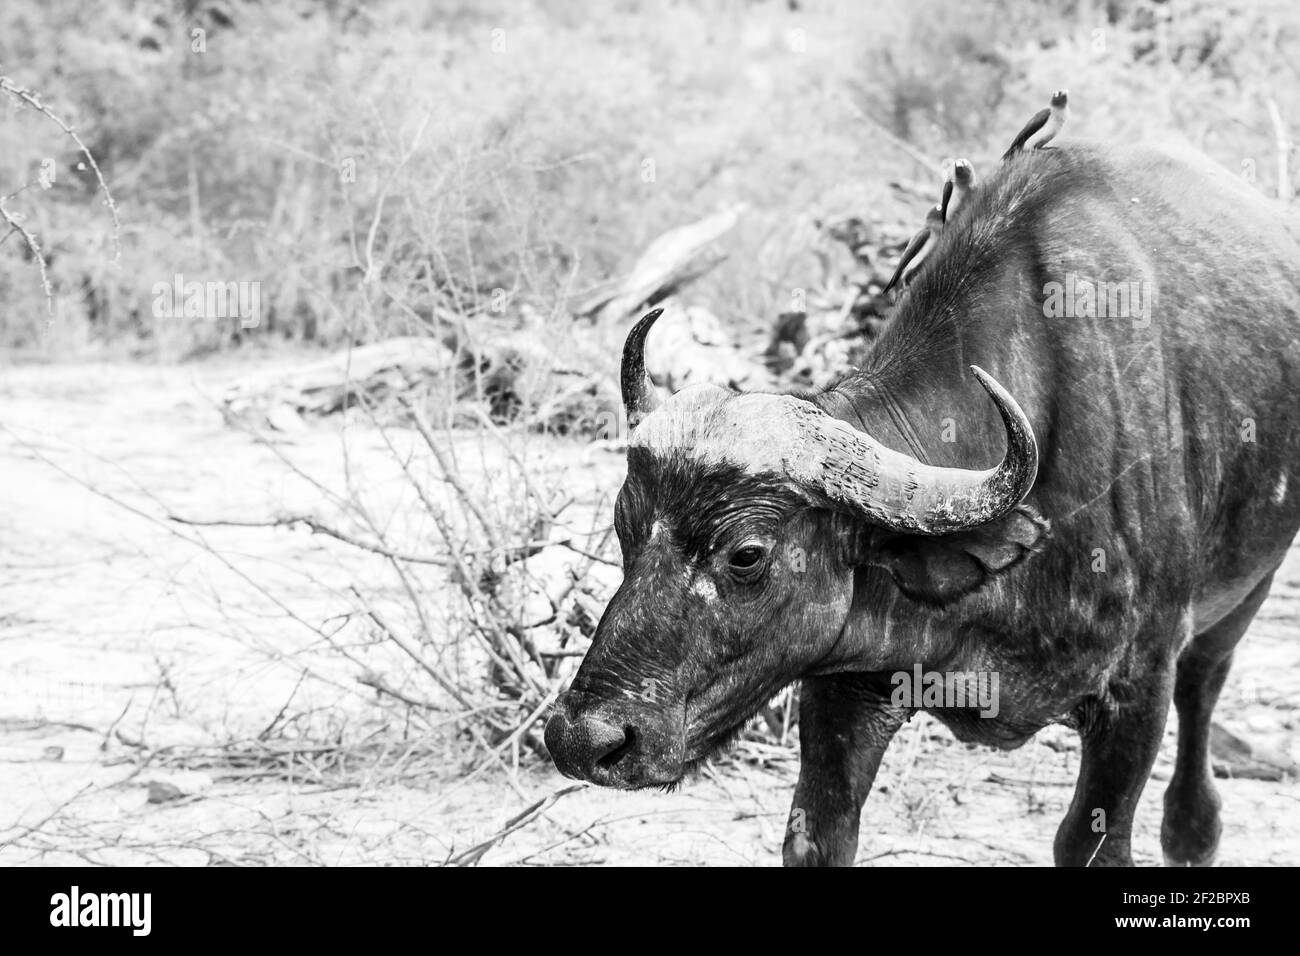 Le Cap Buffalo est affamé pendant une sécheresse dans le parc national Kruger, en Afrique du Sud. Février 2016. Banque D'Images